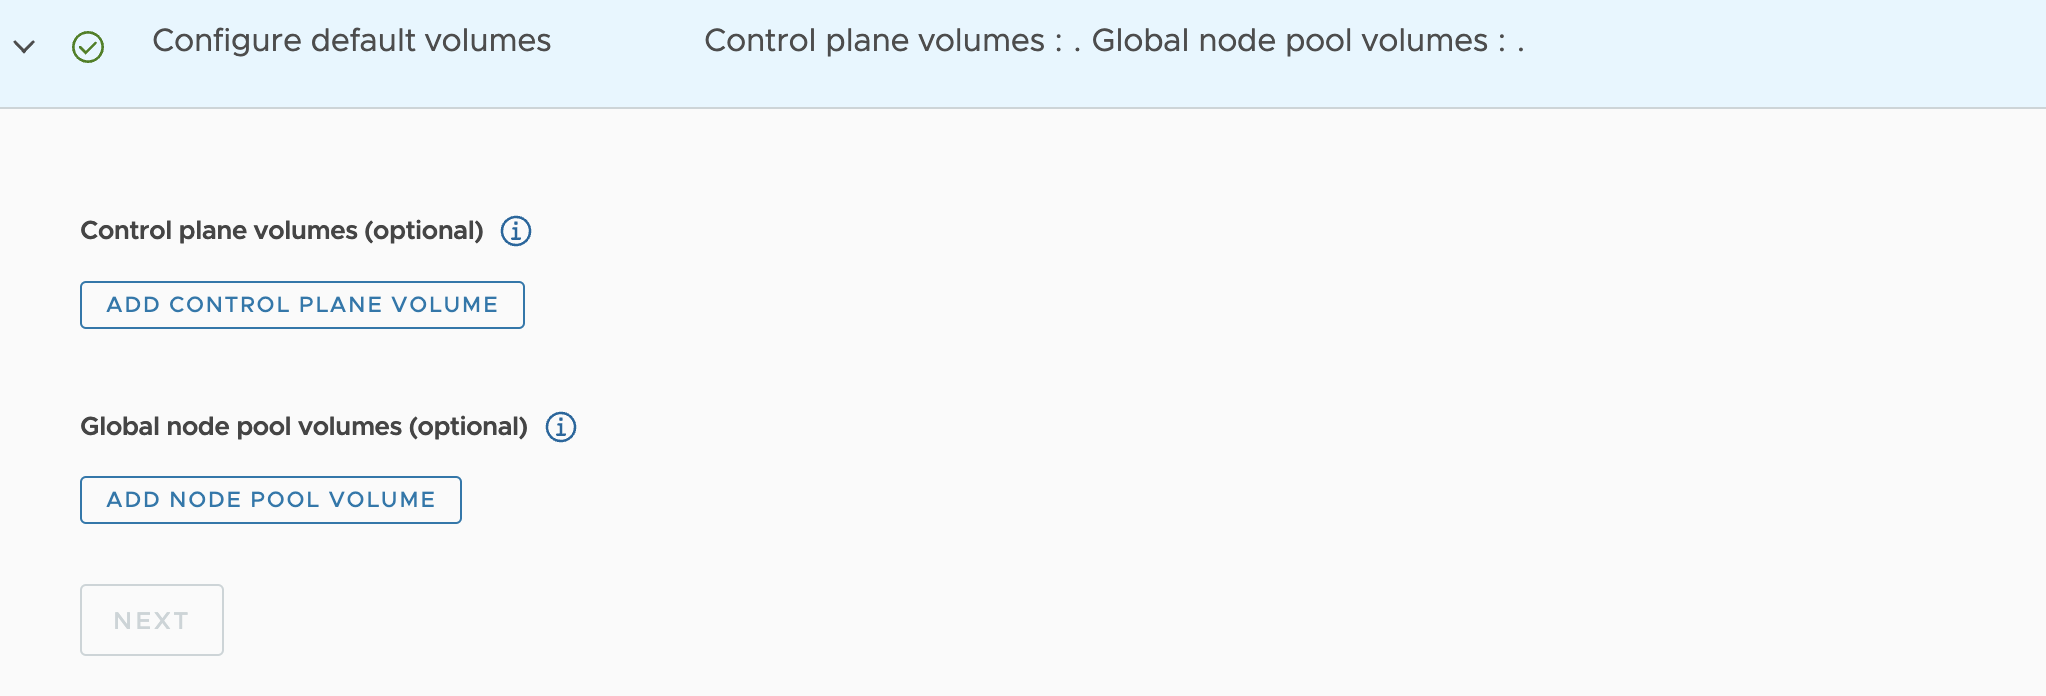 Step 4: Configure default volumes